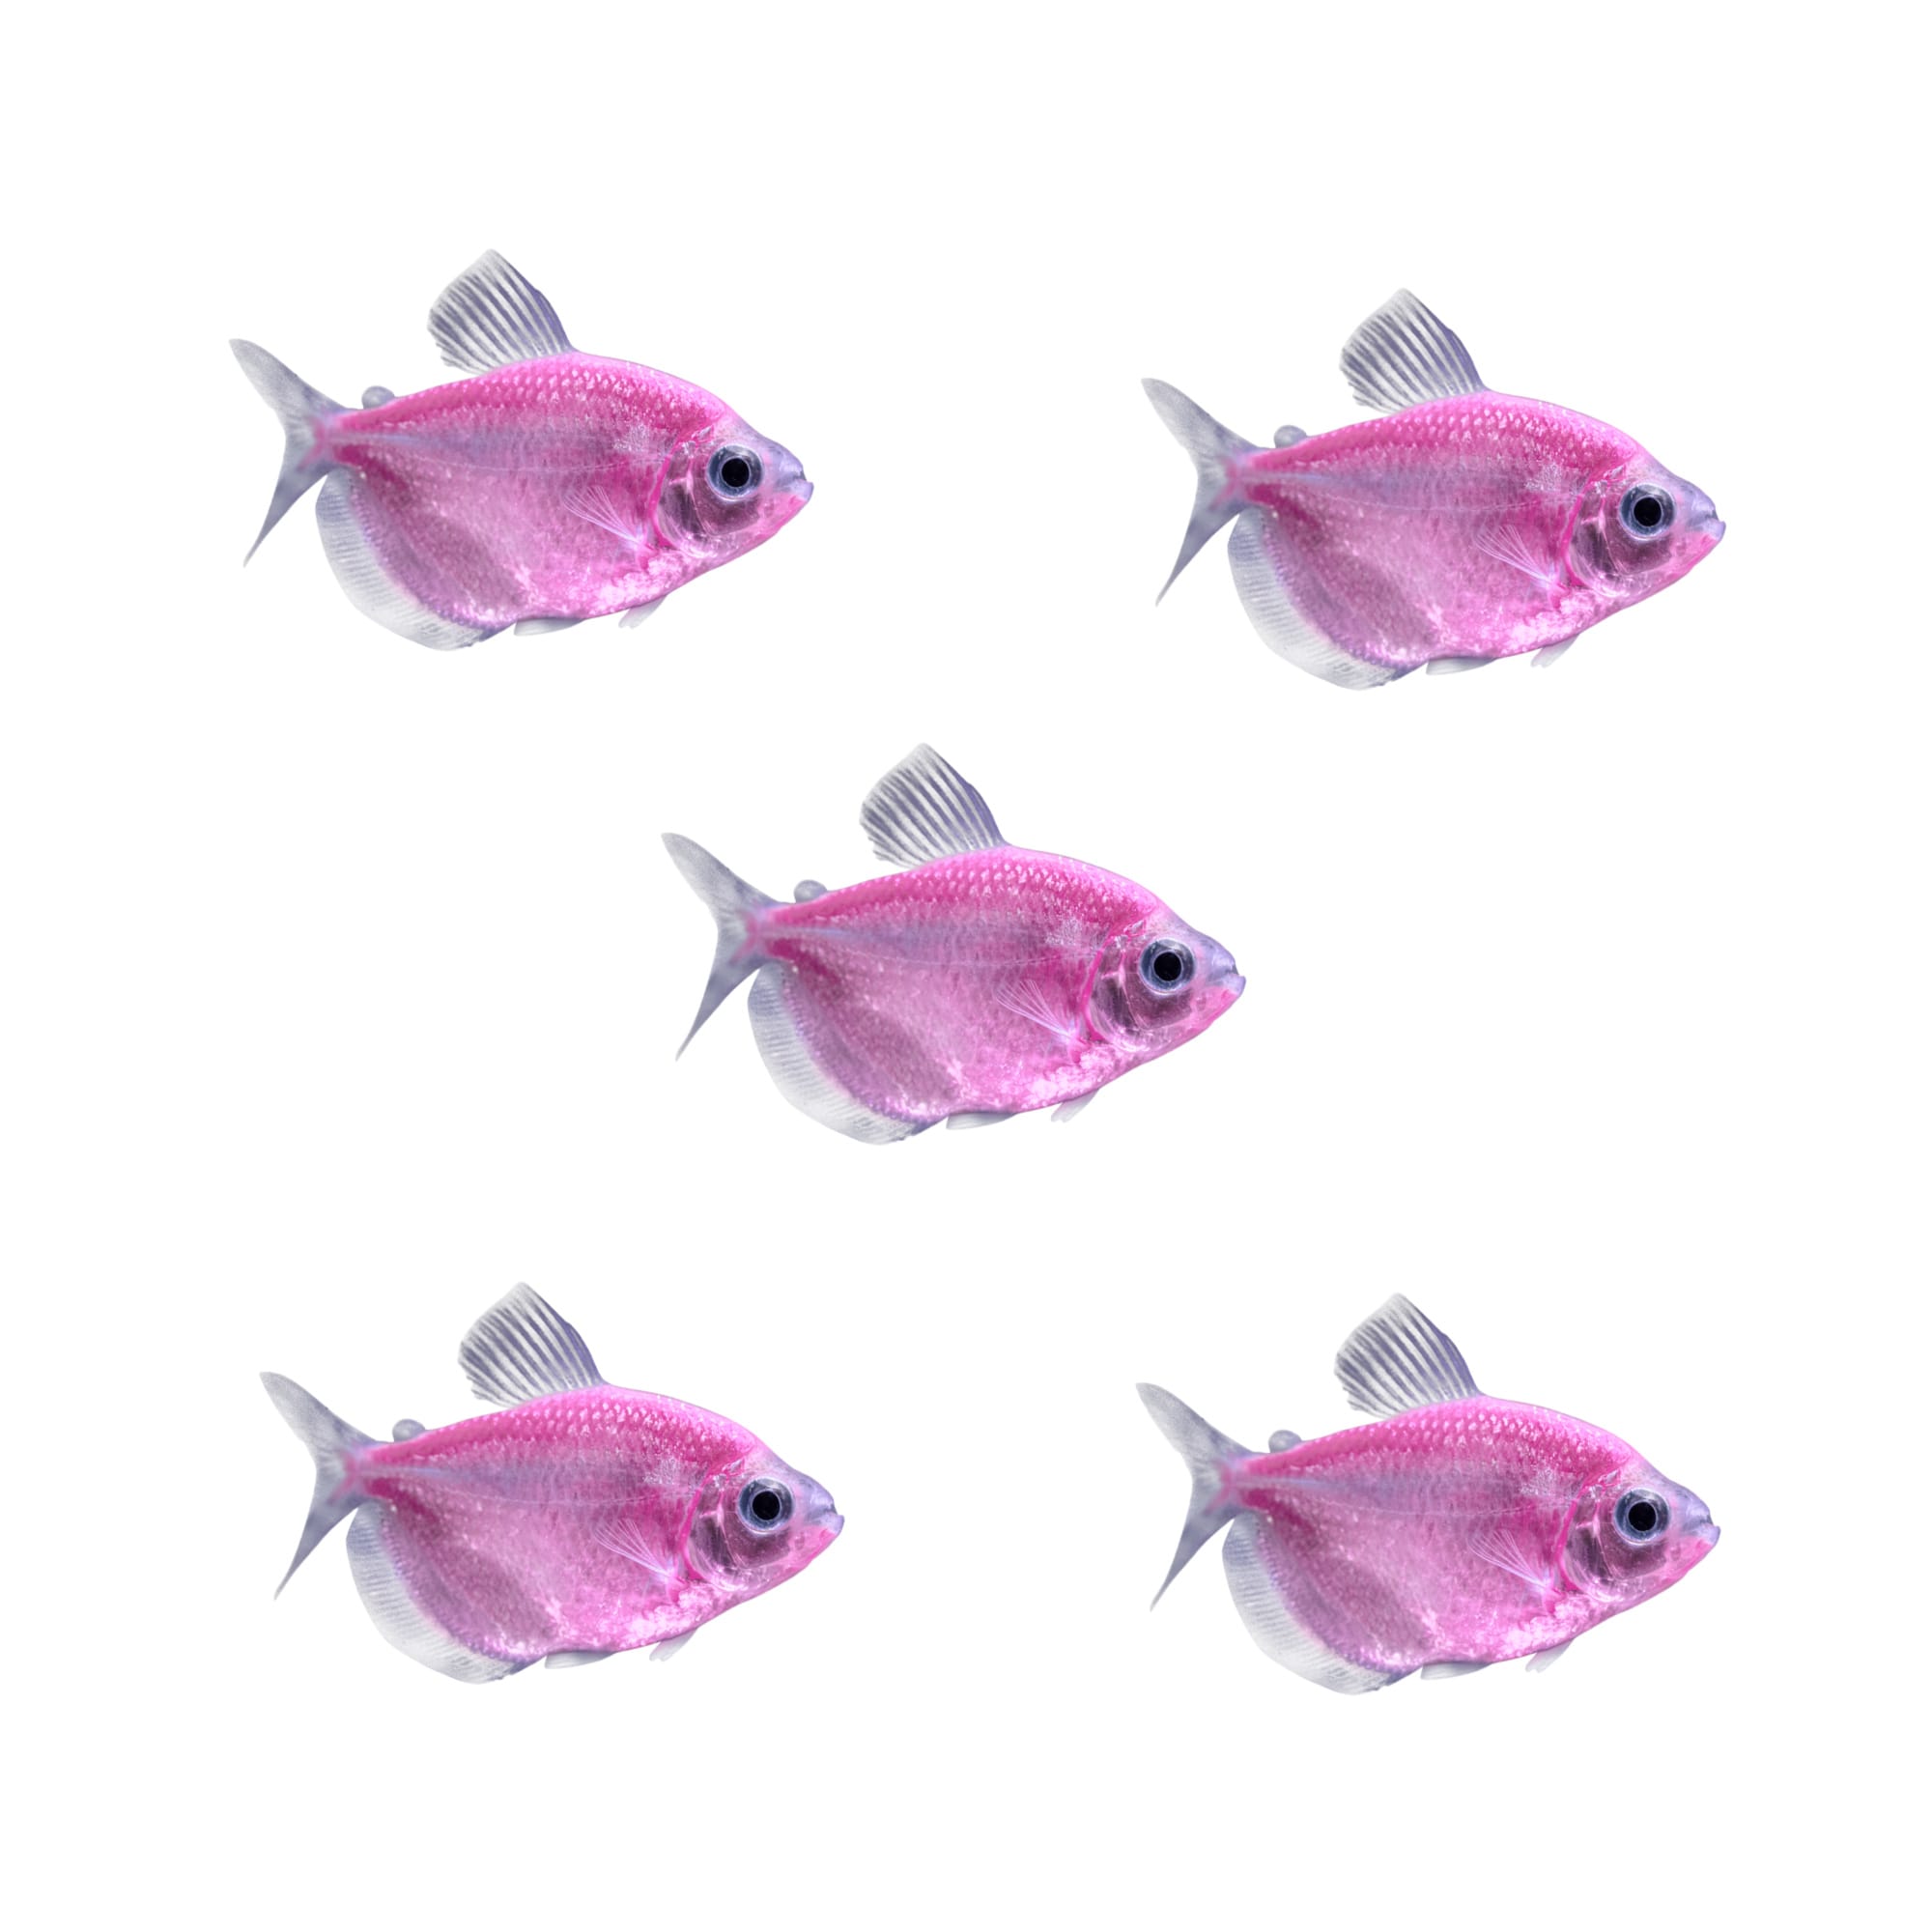 Small | Petco GloFish 5-Pack Assorted Tetra 5-Pack Assorted Danio GloFishs ...